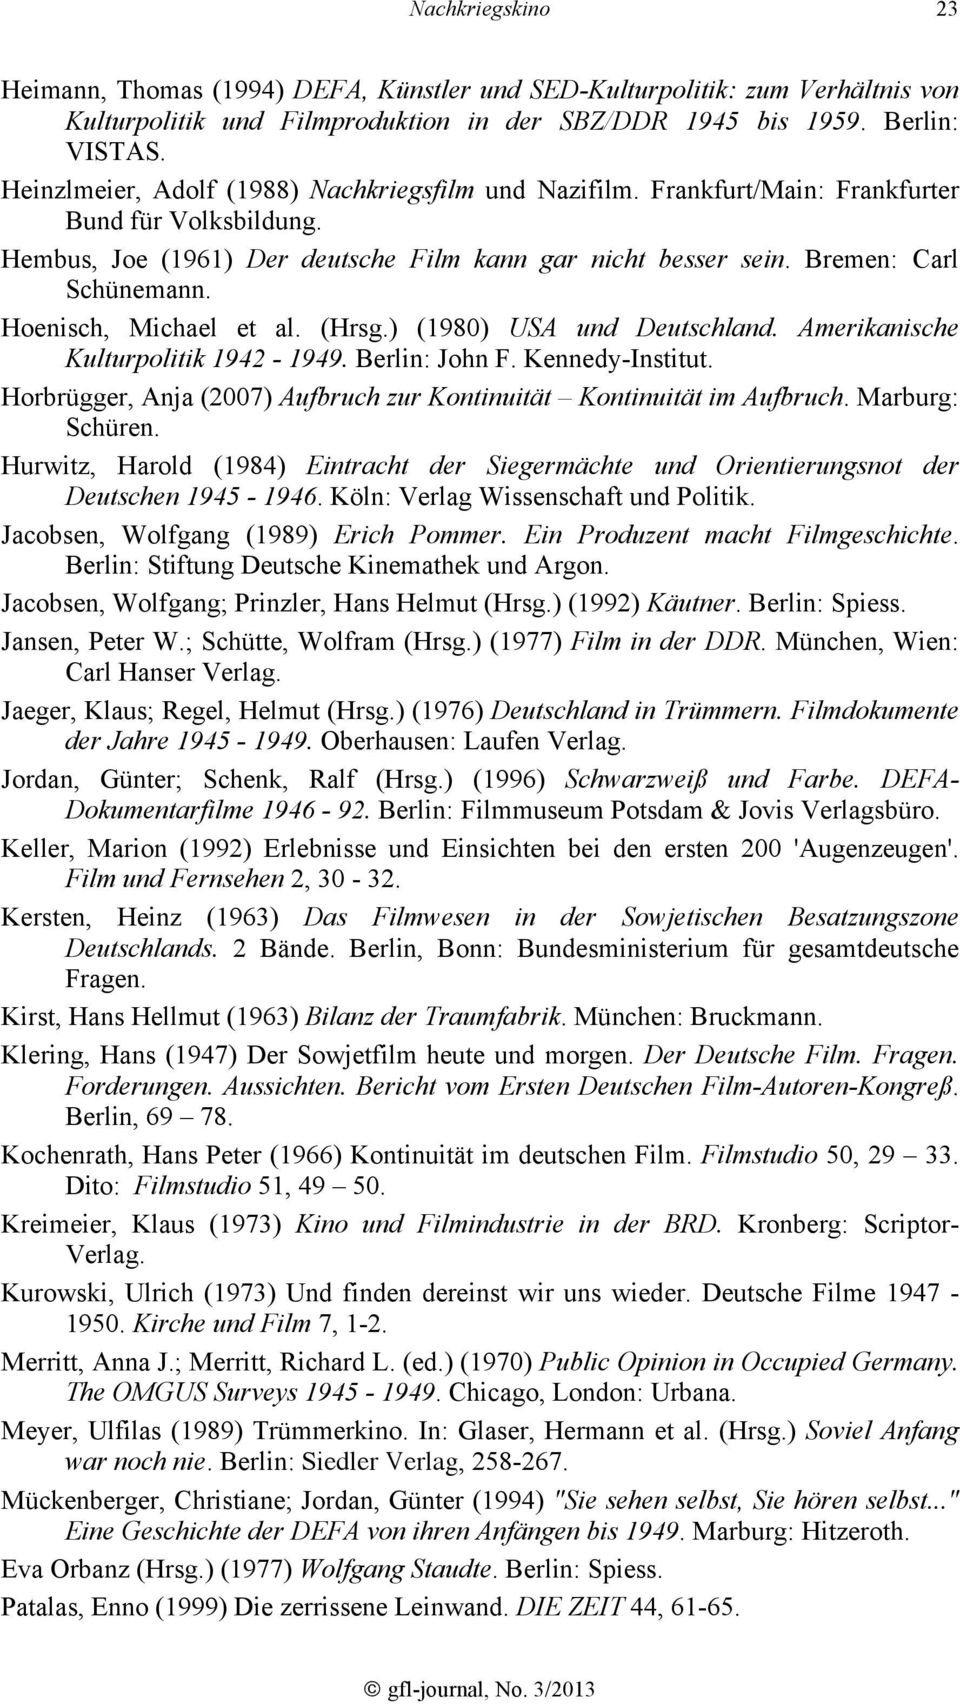 Hoenisch, Michael et al. (Hrsg.) (1980) USA und Deutschland. Amerikanische Kulturpolitik 1942-1949. Berlin: John F. Kennedy-Institut.